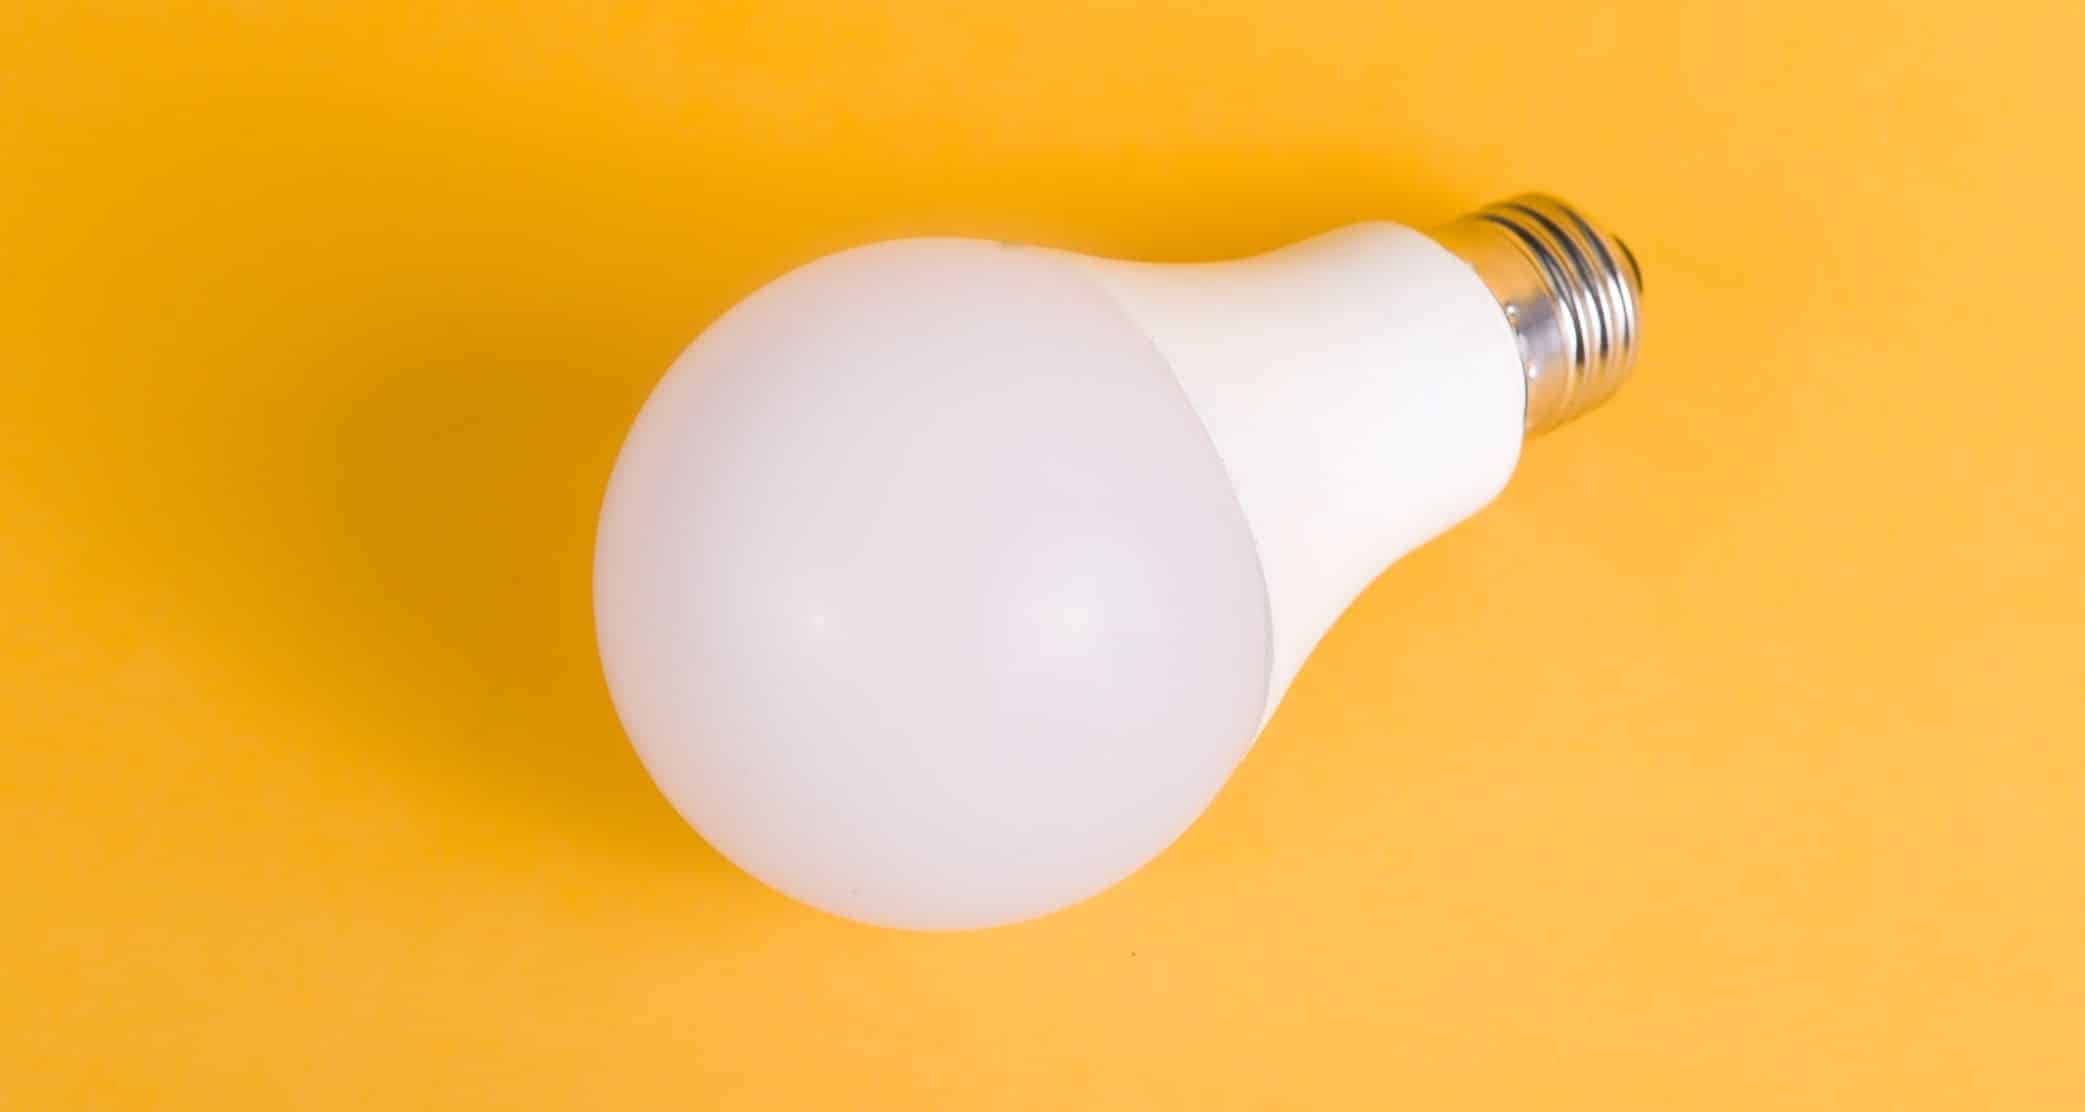 Descubra alguns mitos e verdades sobre o LED